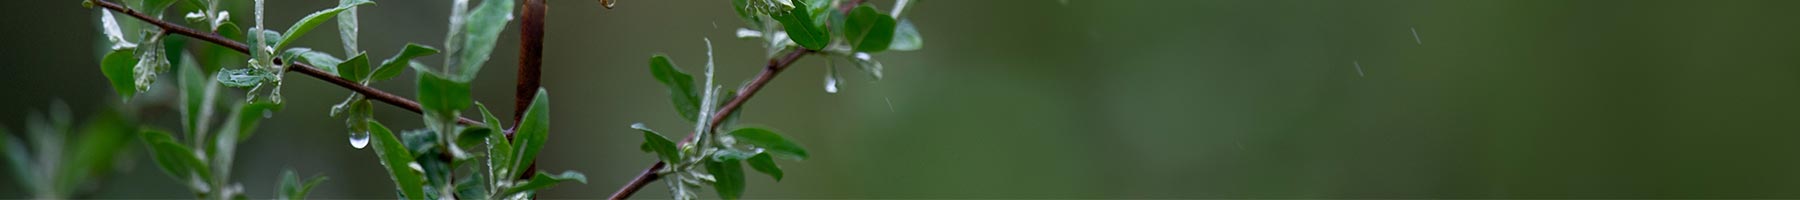 leafy twig in the rain